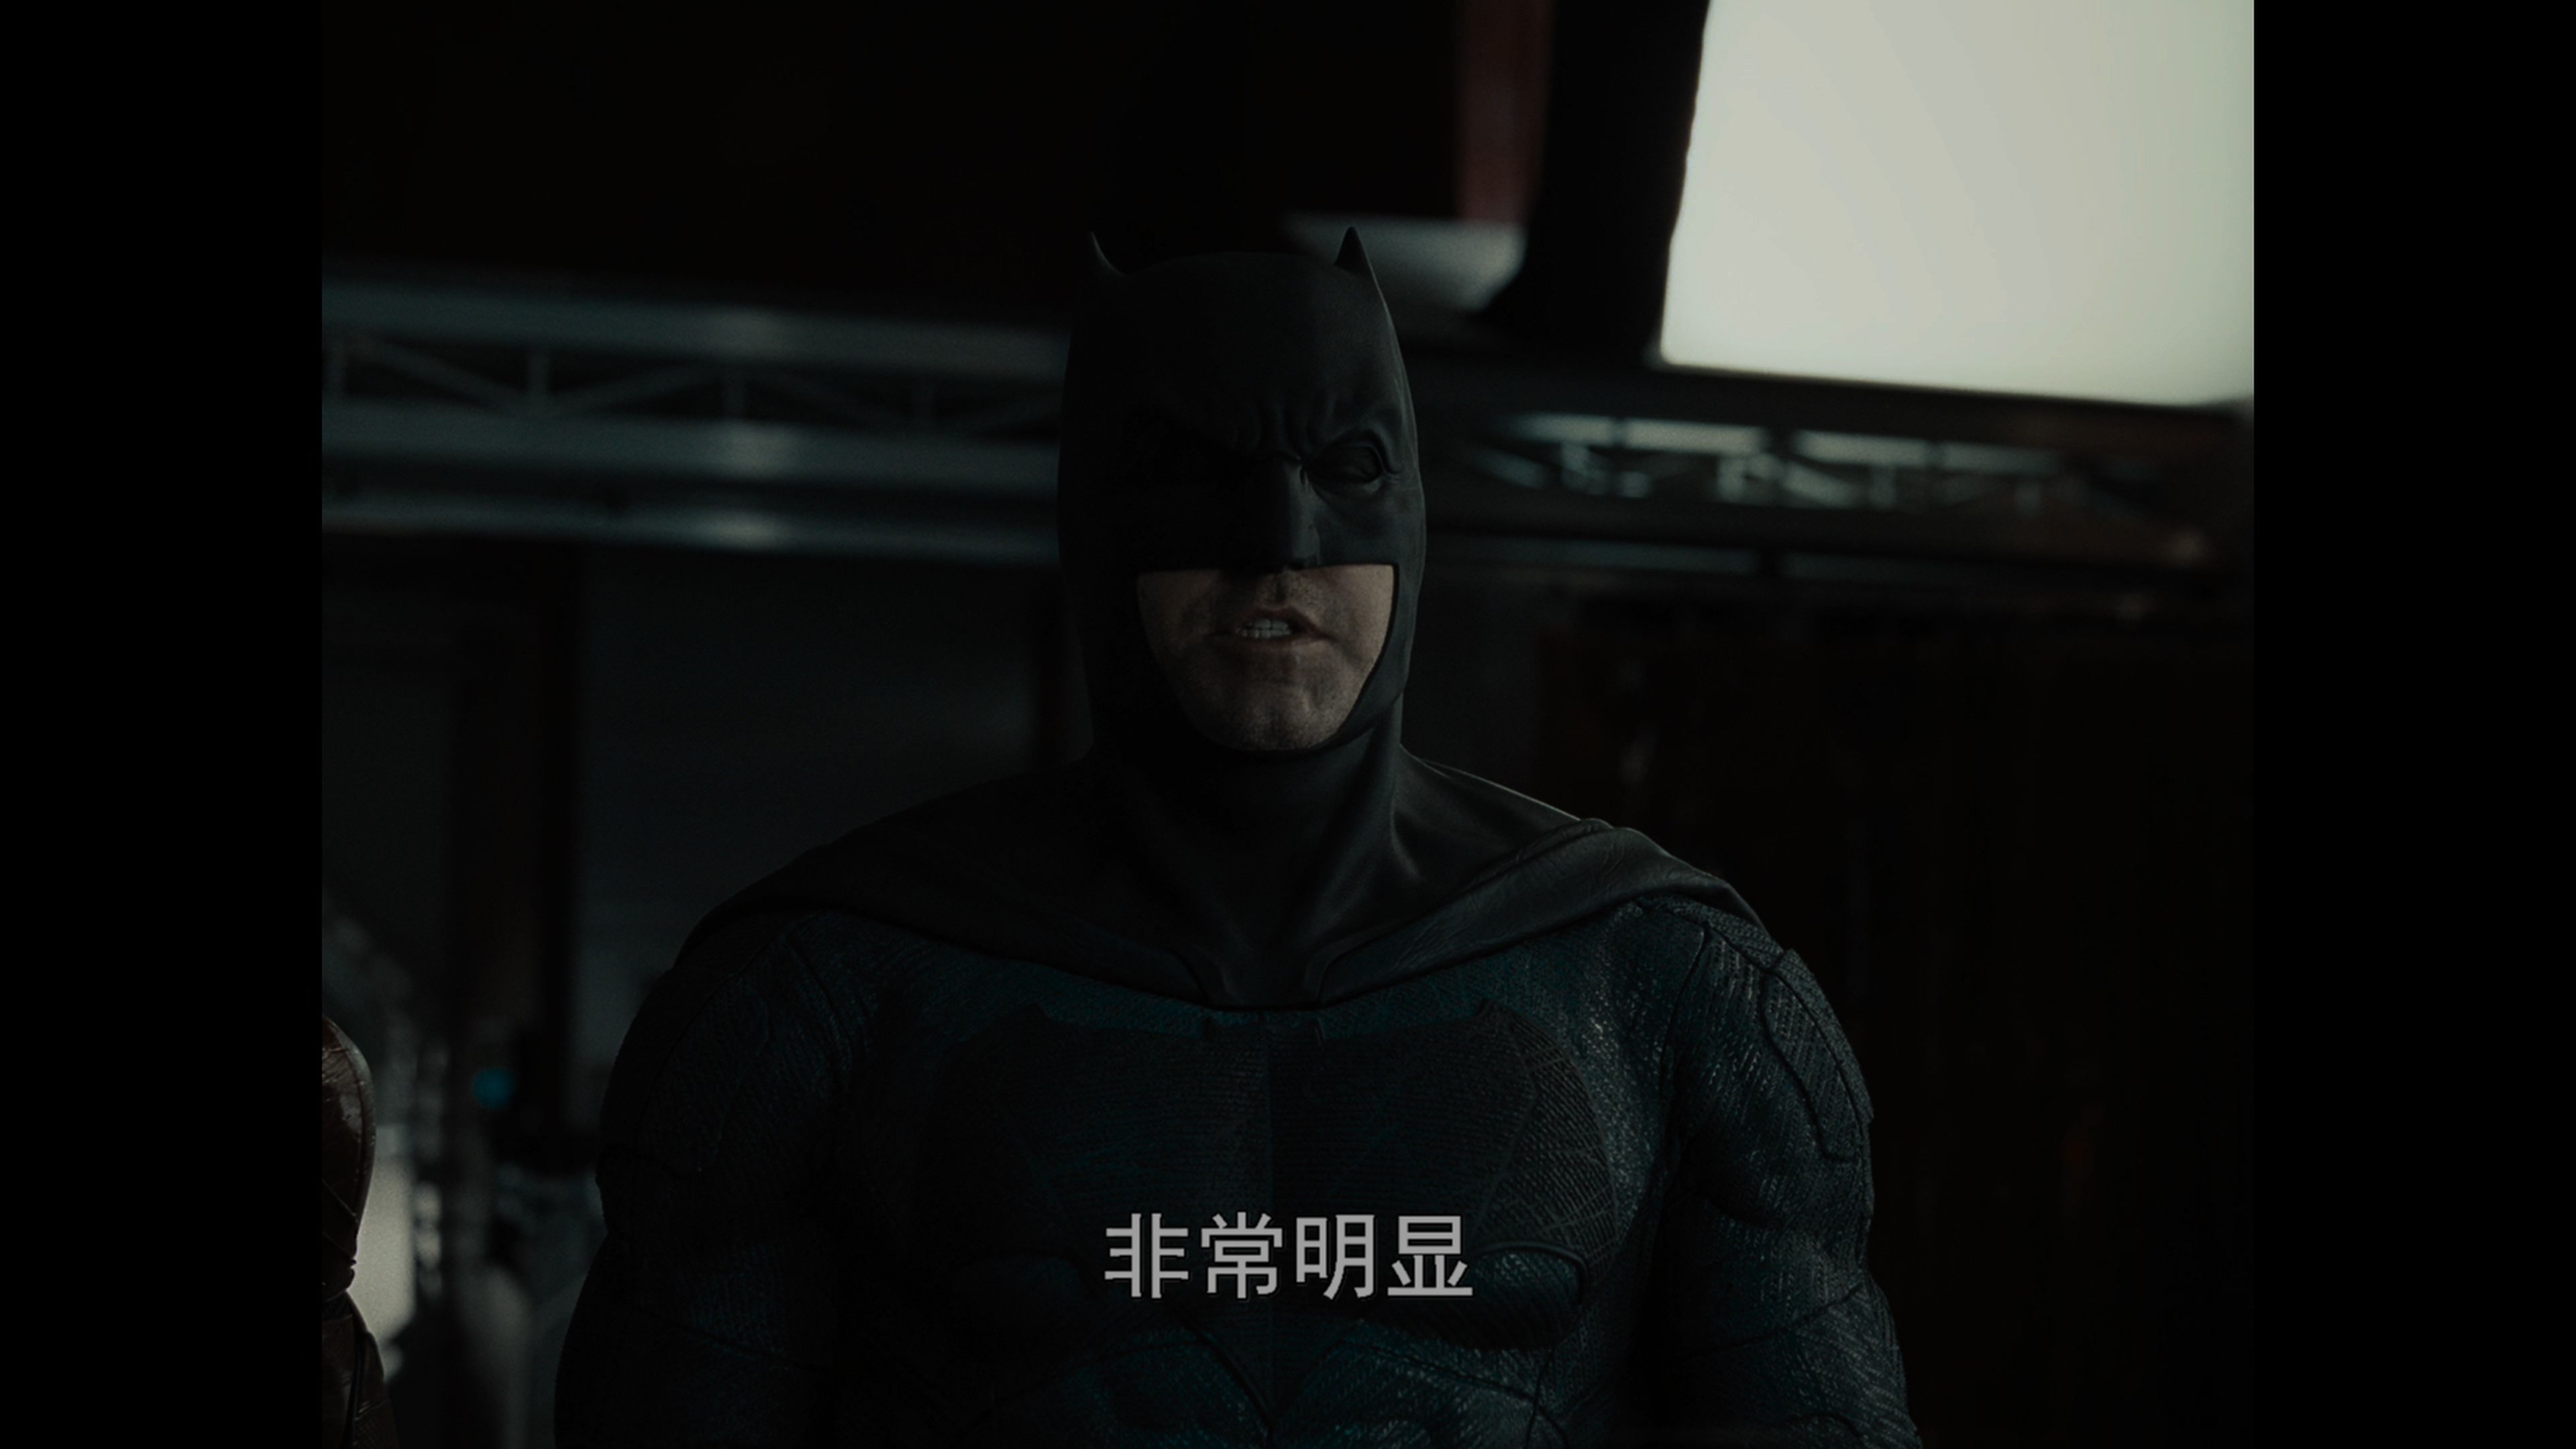 [扎克·施奈德版正义联盟][DiY官译简繁+简英繁英双语字幕] Zack Snyder's Justice League 2021 2160p EUR UHD Blu-ray HEVC Atmos TrueHD 7.1-DiY@HDHome    [136.22 GB ]-4.jpg